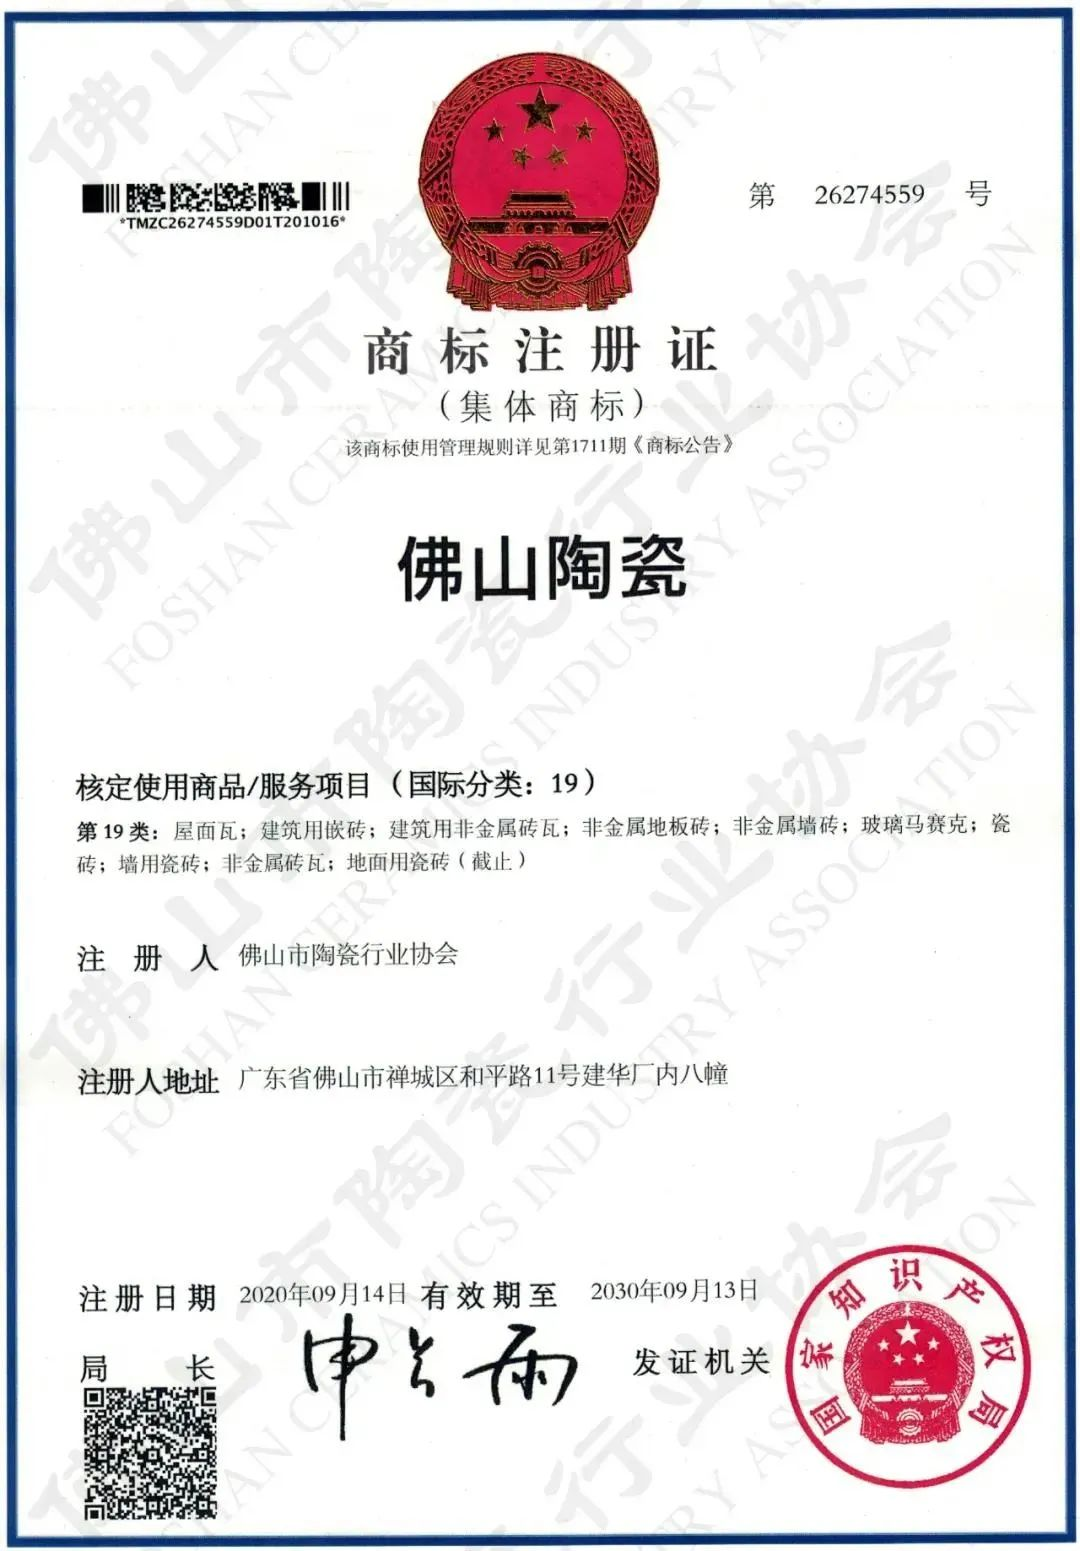 权威认证，品质保障 | bob官方体育
上榜首批“佛山陶瓷”集体商标授权品牌(图4)